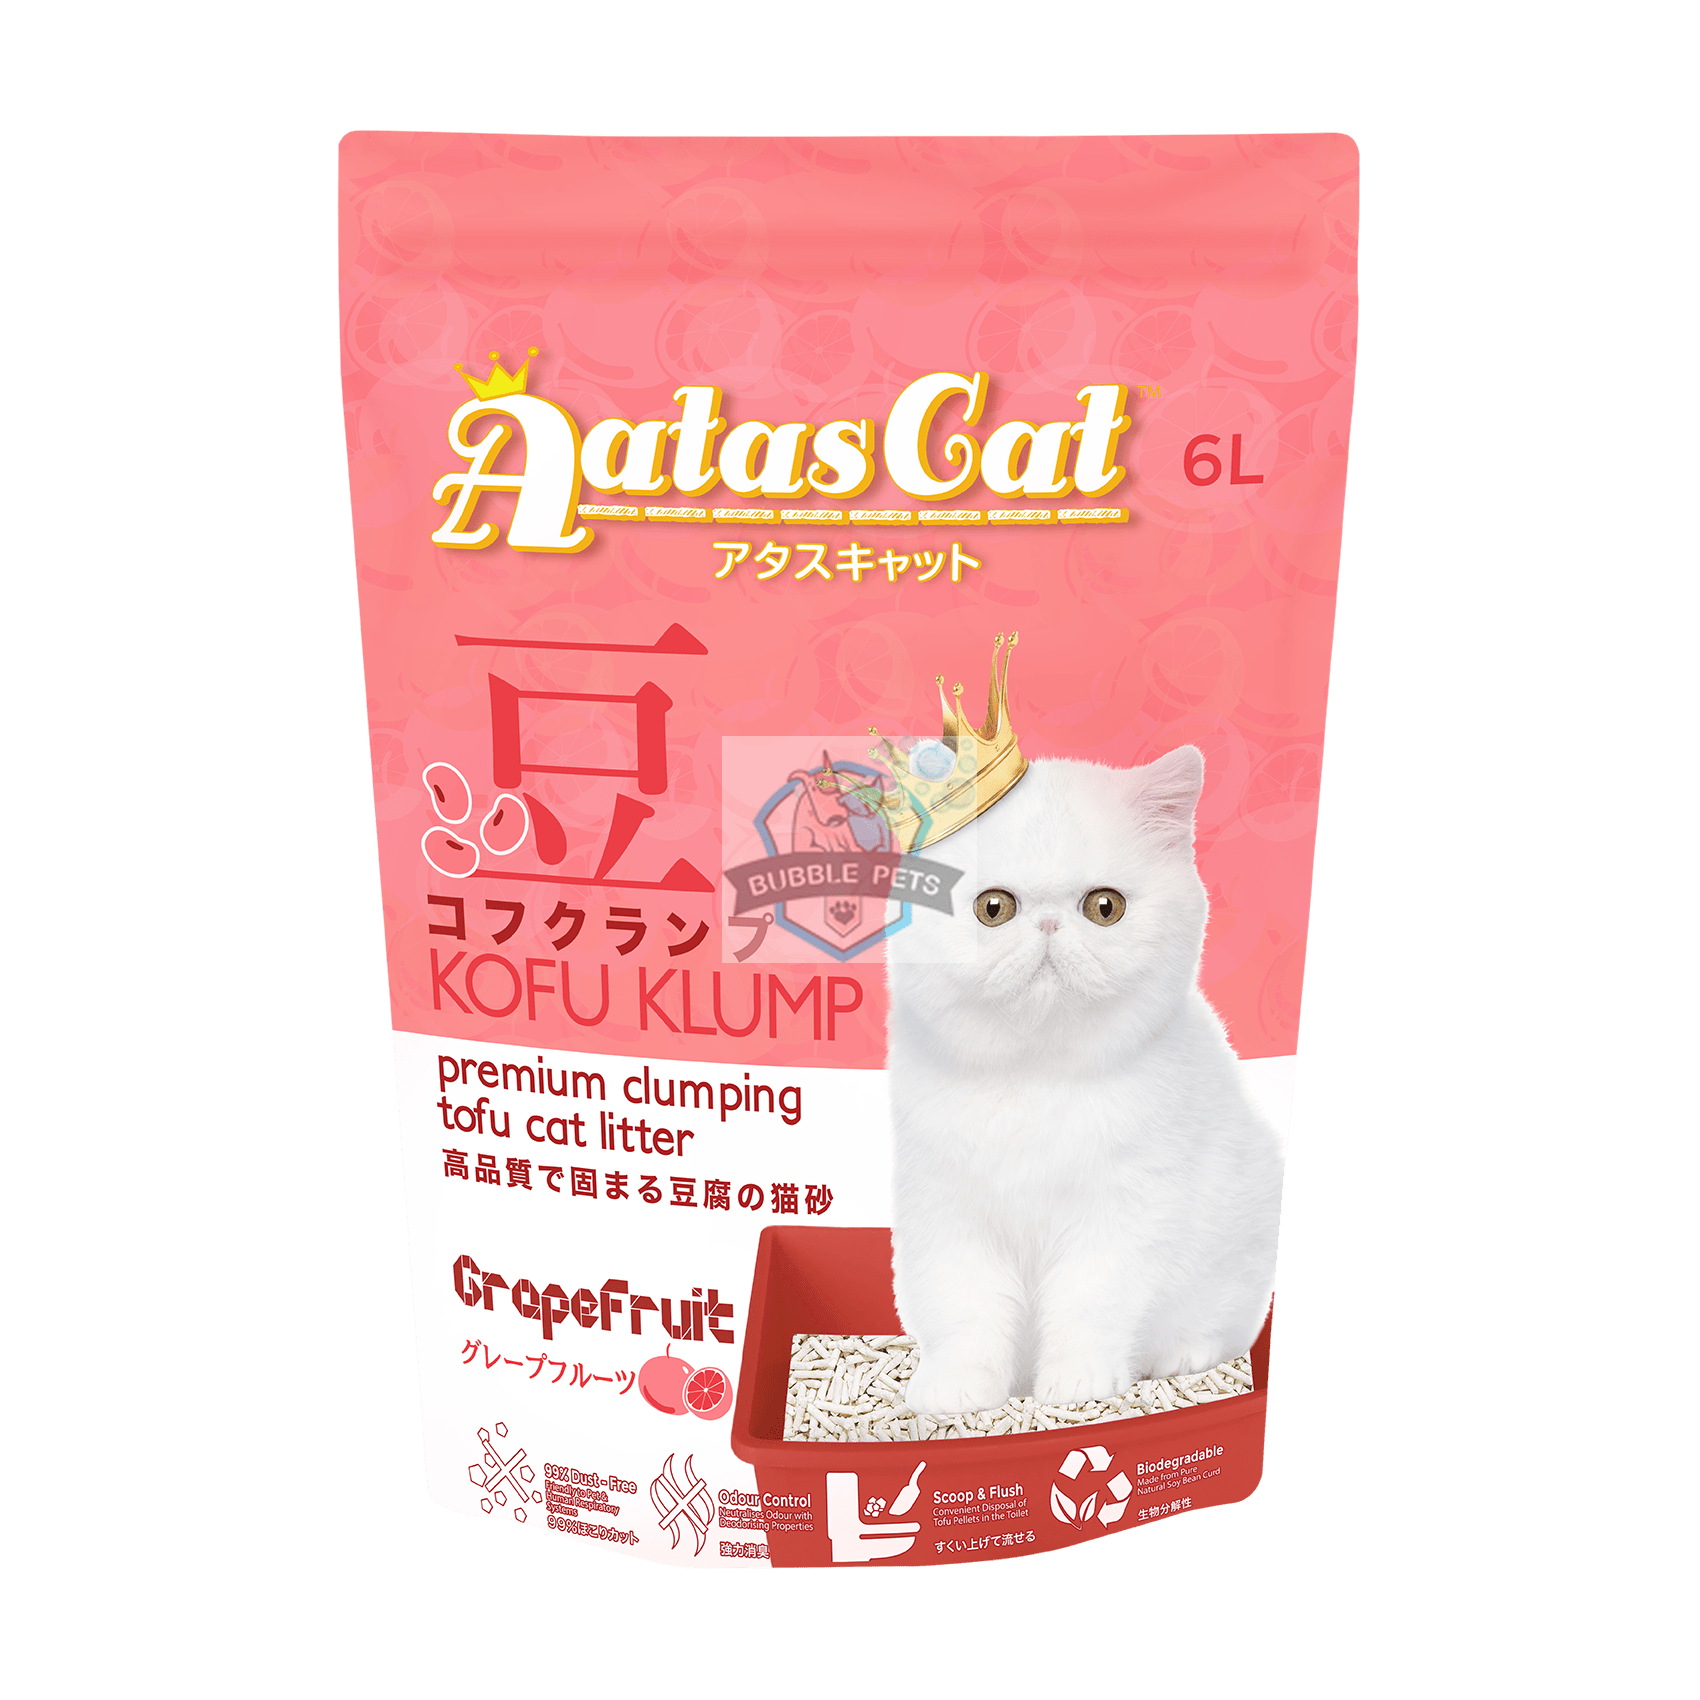 Aatas Cat Kofu Klump Tofu Cat Litter Grapefruit 6L